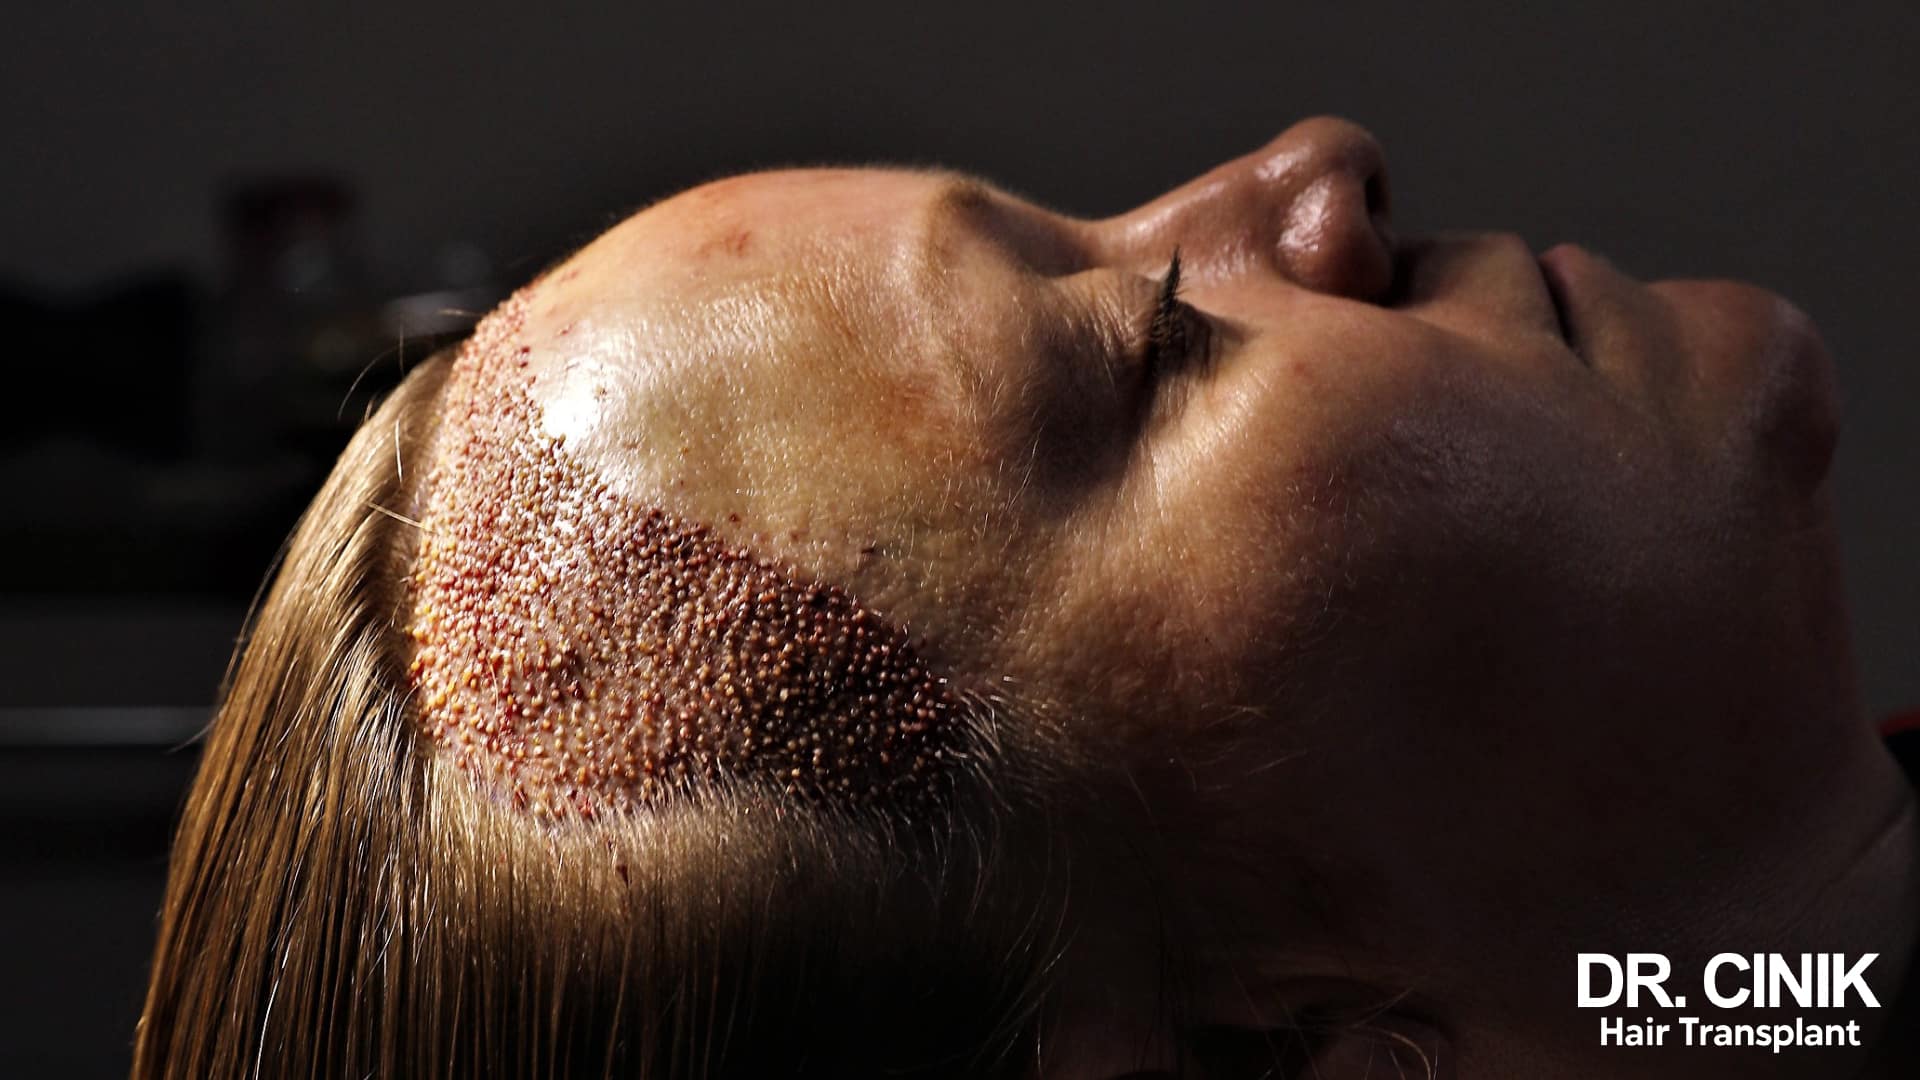 Une femme est en plein processus de greffe de cheveux via la méthode DHI, qui nécessite un rasage partiel du cuir chevelu. Elle se trouve actuellement dans la phase d'implantation des follicules capillaires